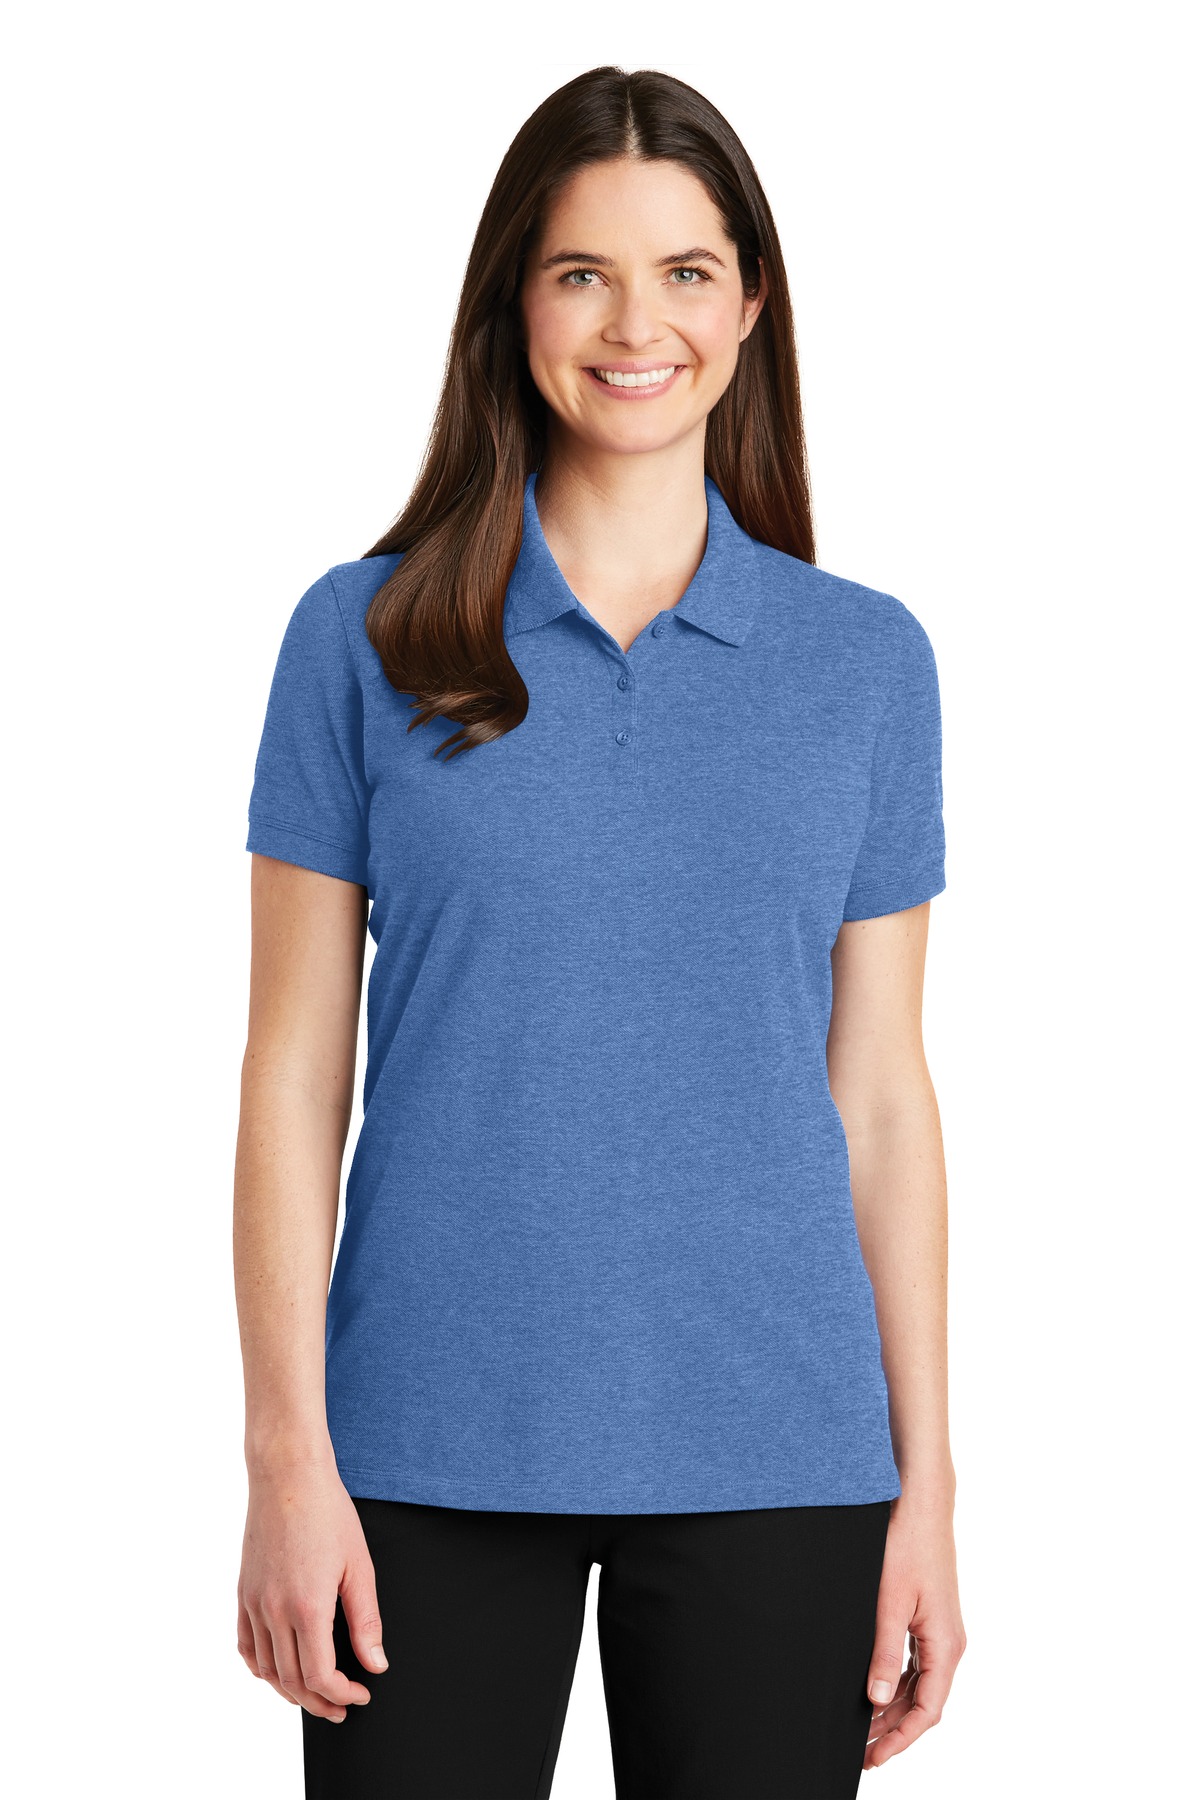 Port Authority Adult Female Women Plain Short Sleeves Polo Blue Heather X-Large - image 1 of 4